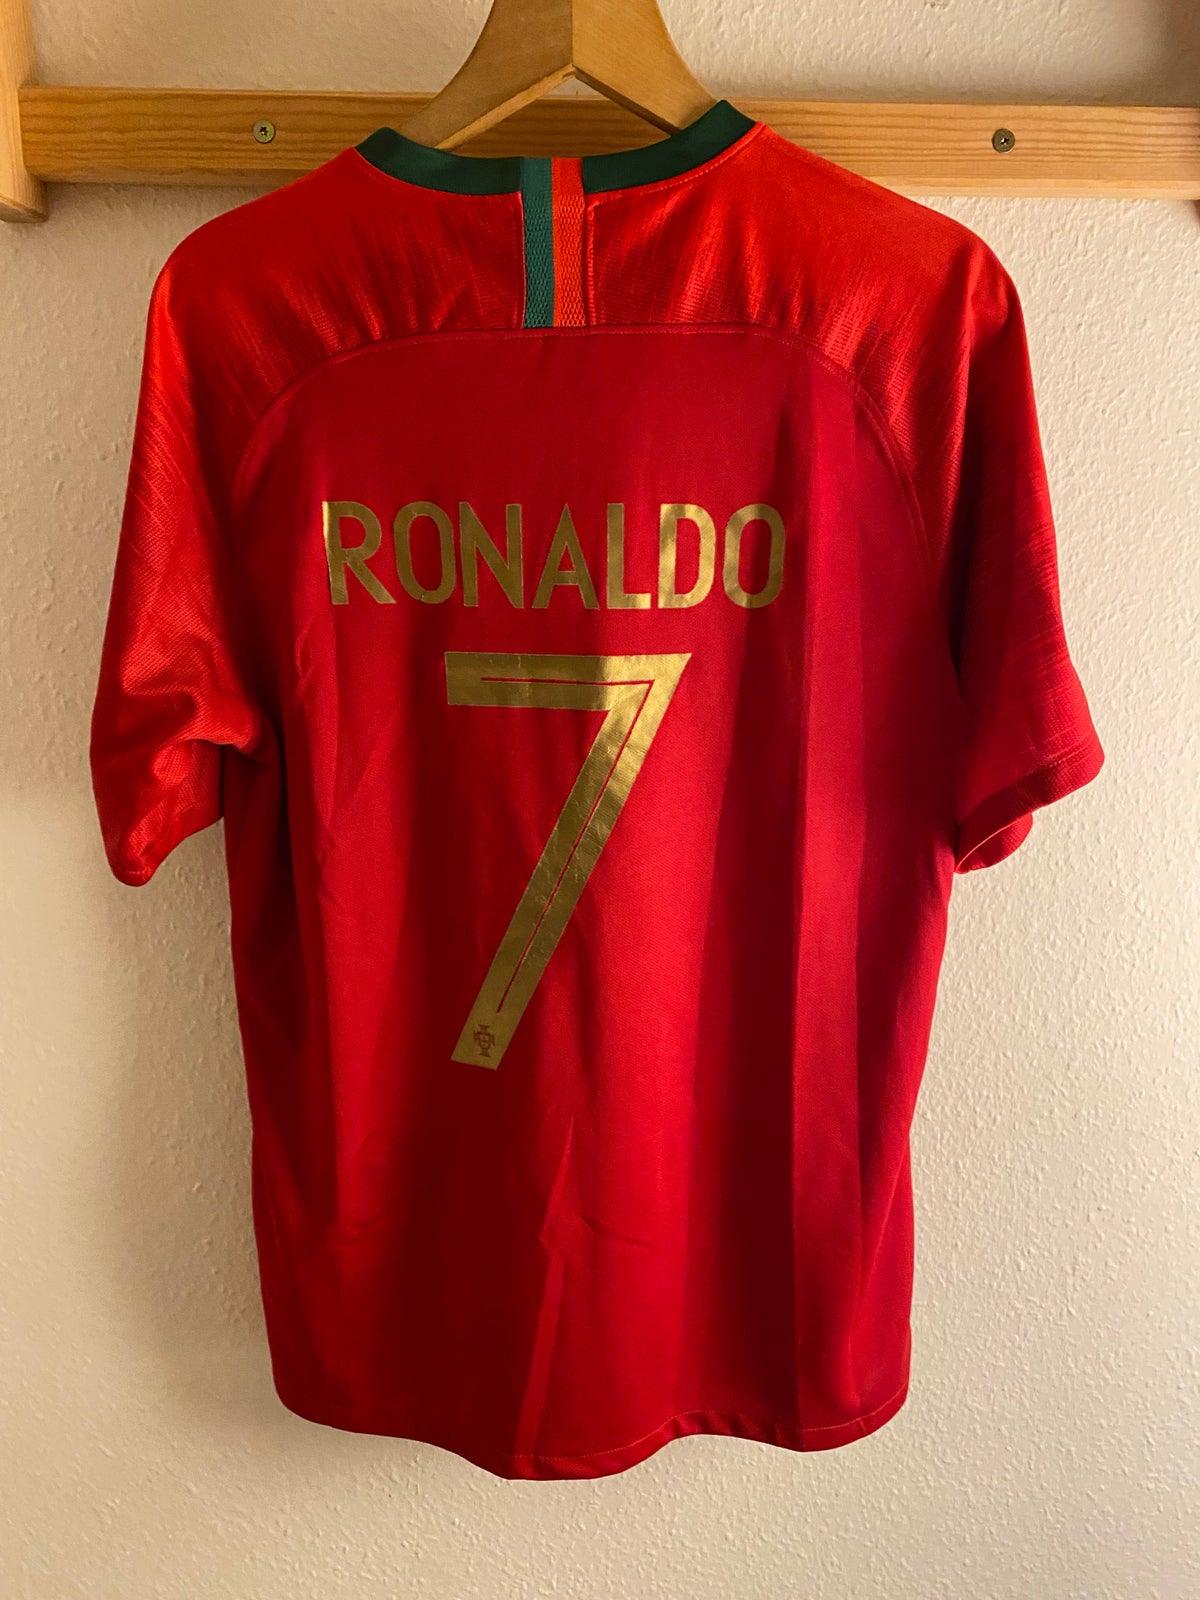 Fodboldtrøje, C.Ronaldo Nations League 2019 vinder